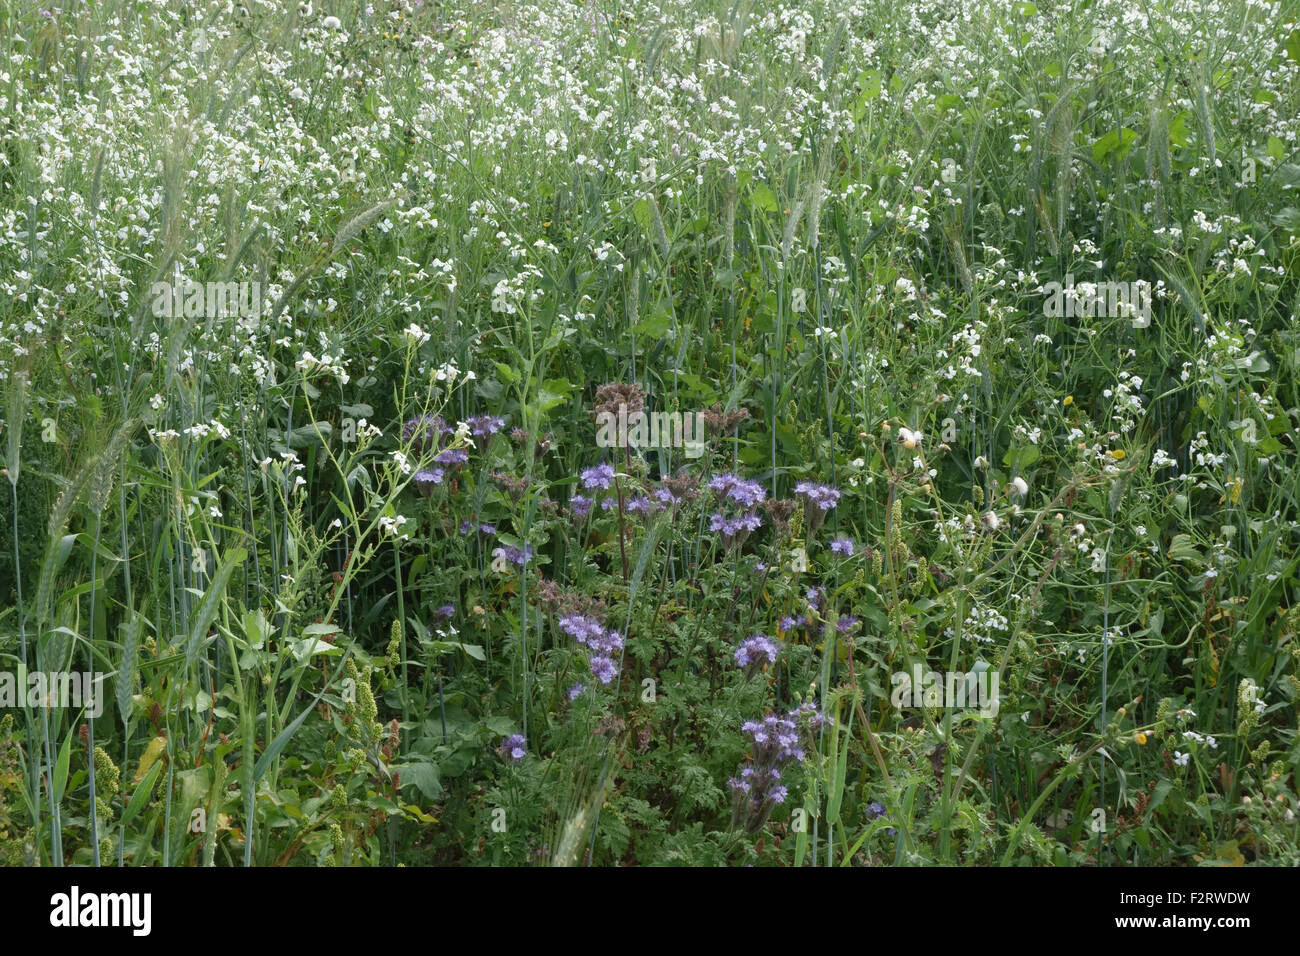 Wildblumen-Marge mit blühenden Pflanzen, Insekten und Tiere neben landwirtschaftlichen Kulturen, Berkshire, September zu gewinnen Stockfoto